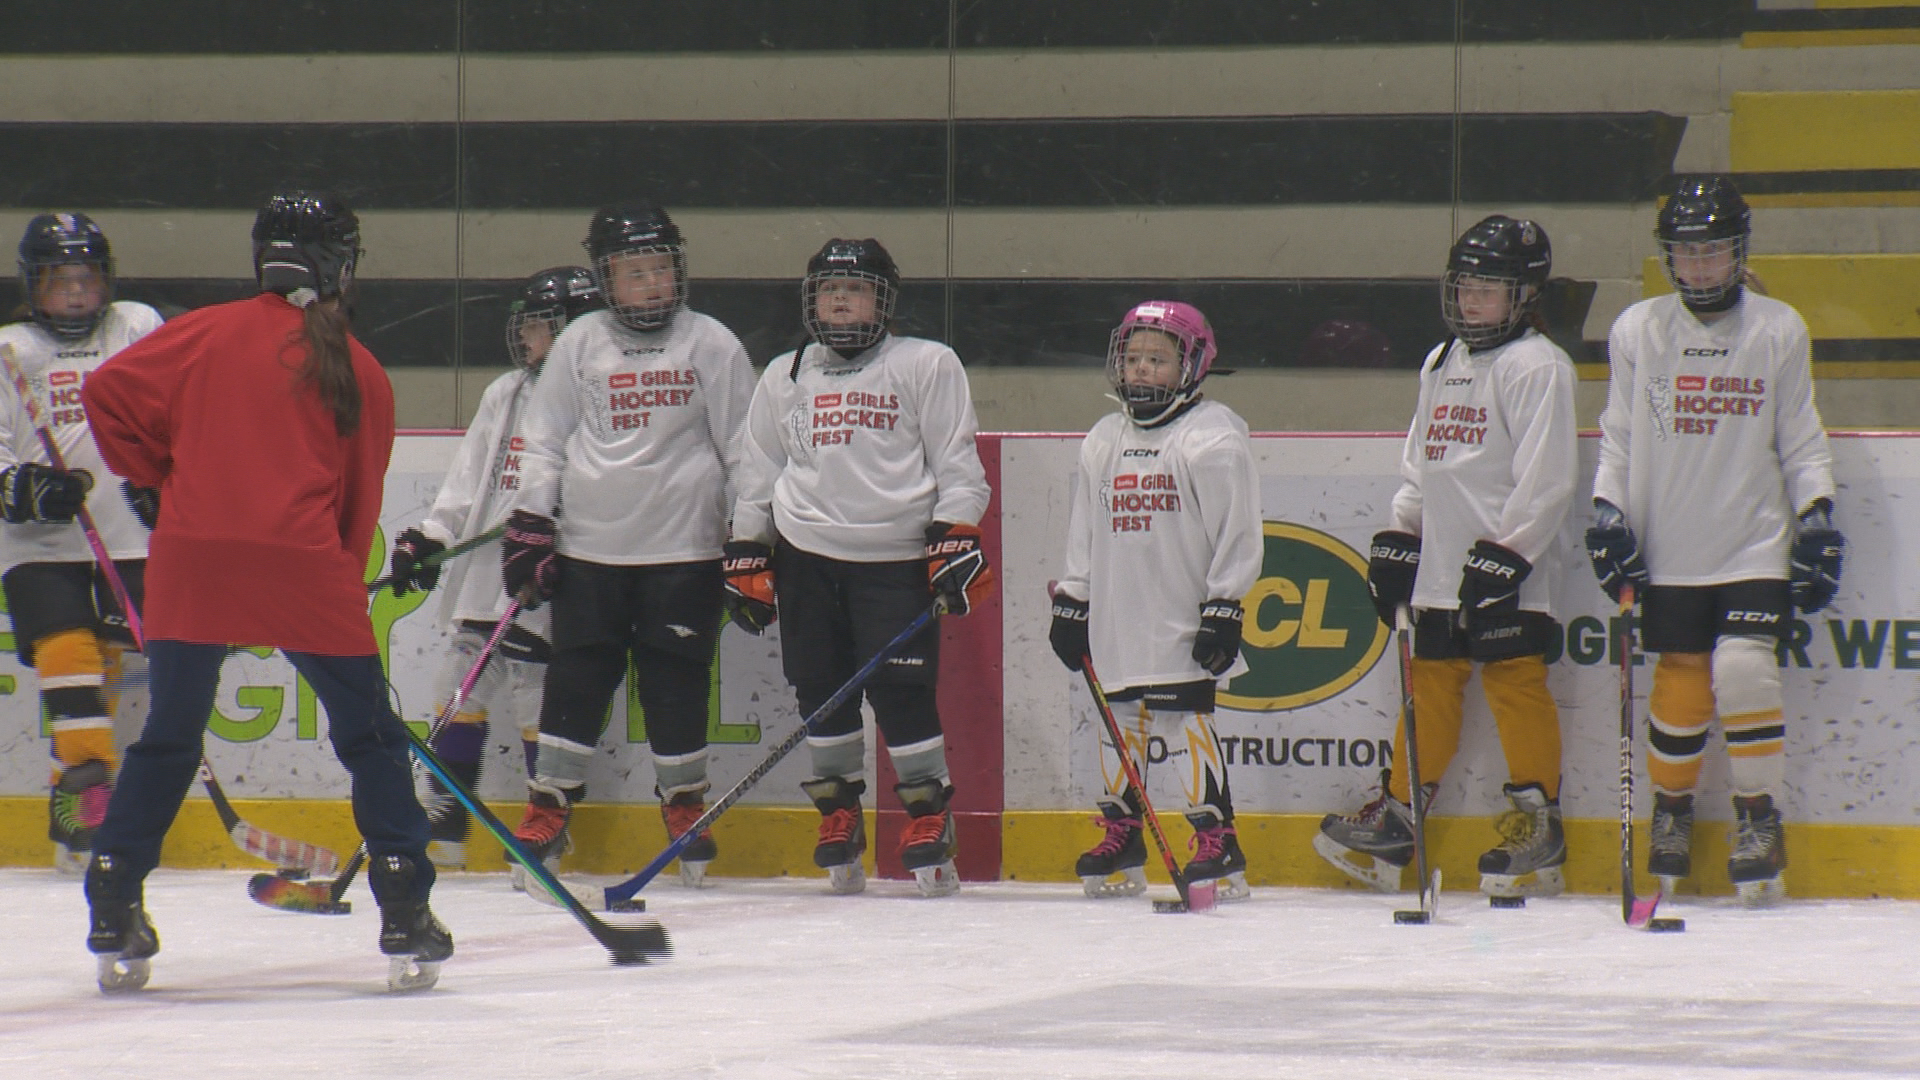 Girls HockeyFest се завърна в Уинипег в неделя организиран от